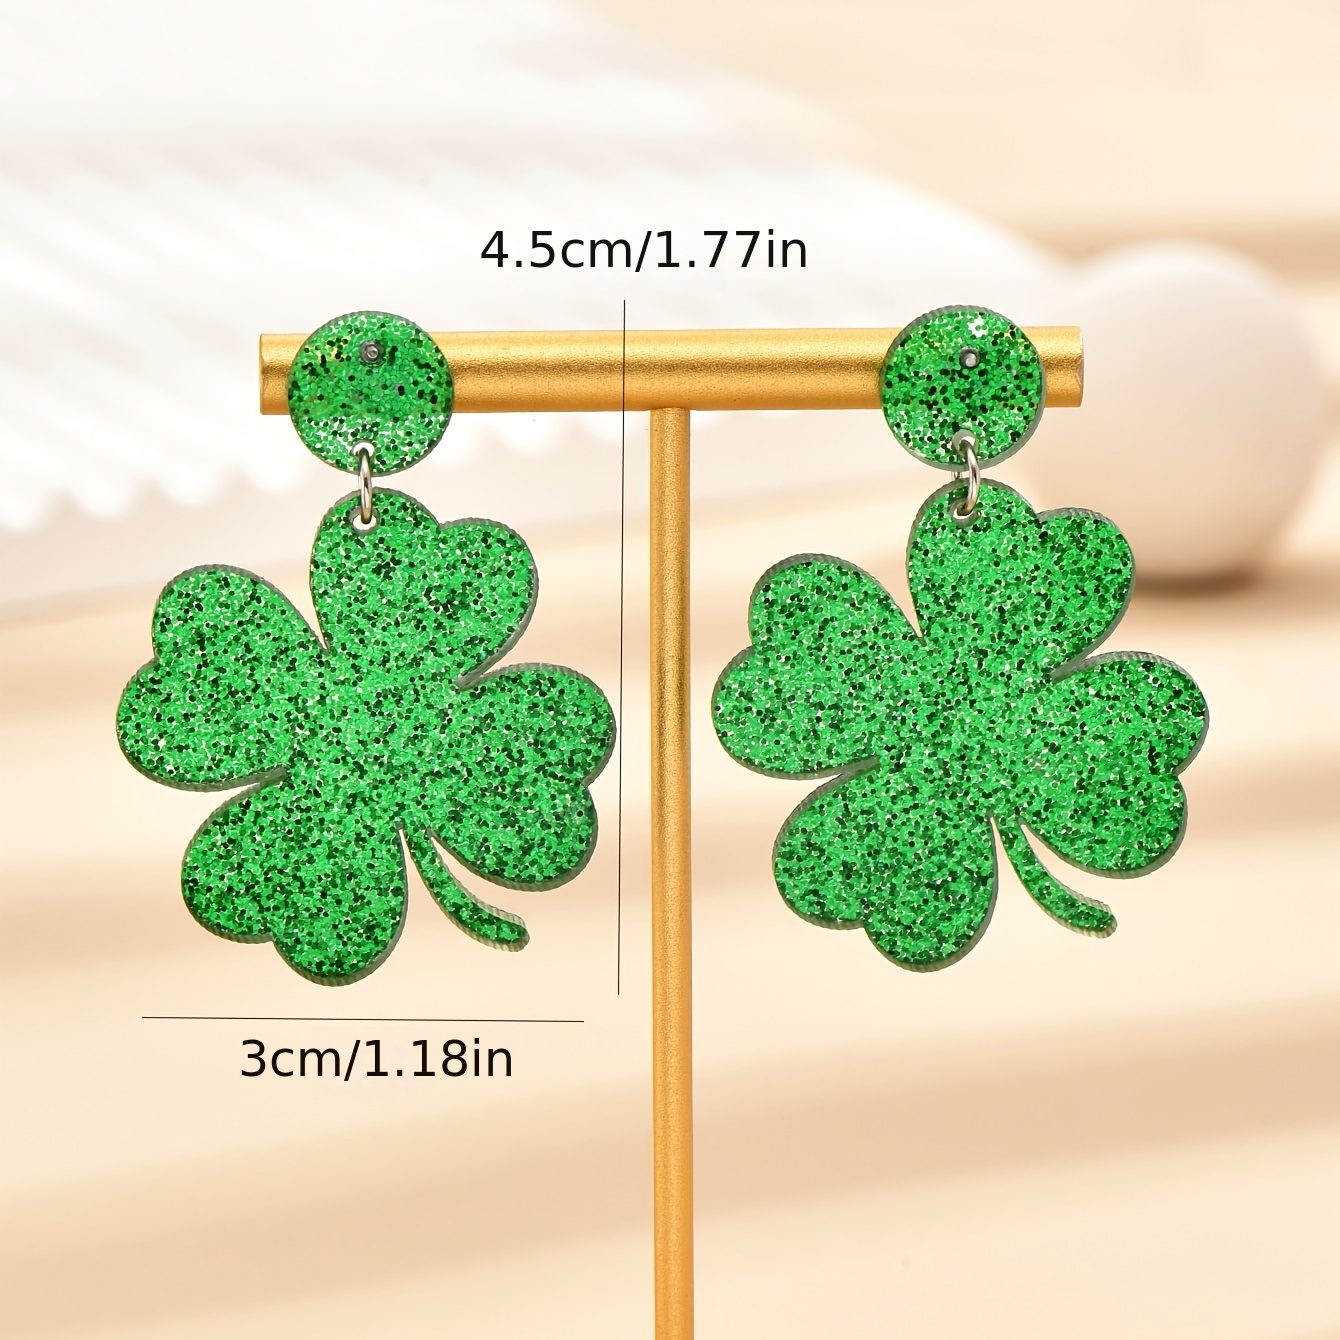  Shamrock Earrings for Women St Patricks Day Earrings Acrylic  Green Drop Earrings Irish Holiday Earrings Jewelry St Patricks Day  Accessories: Clothing, Shoes & Jewelry